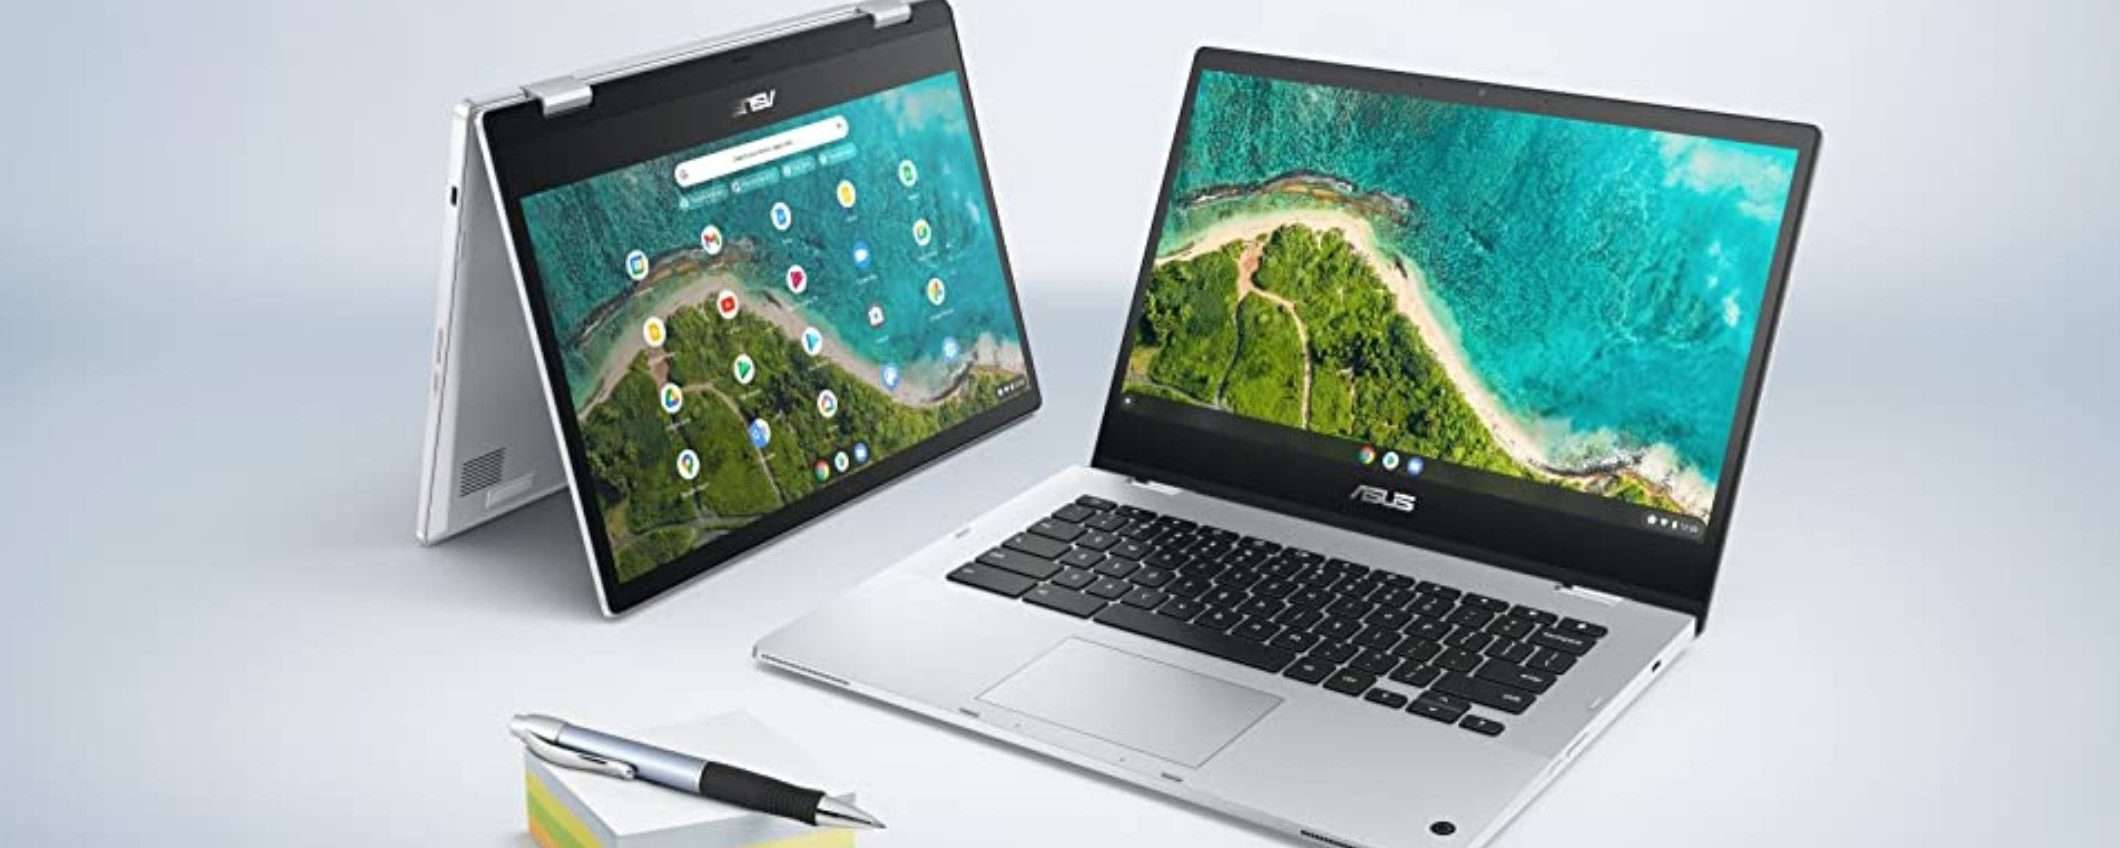 ASUS Chromebook a metà prezzo: solo 179€ su Amazon